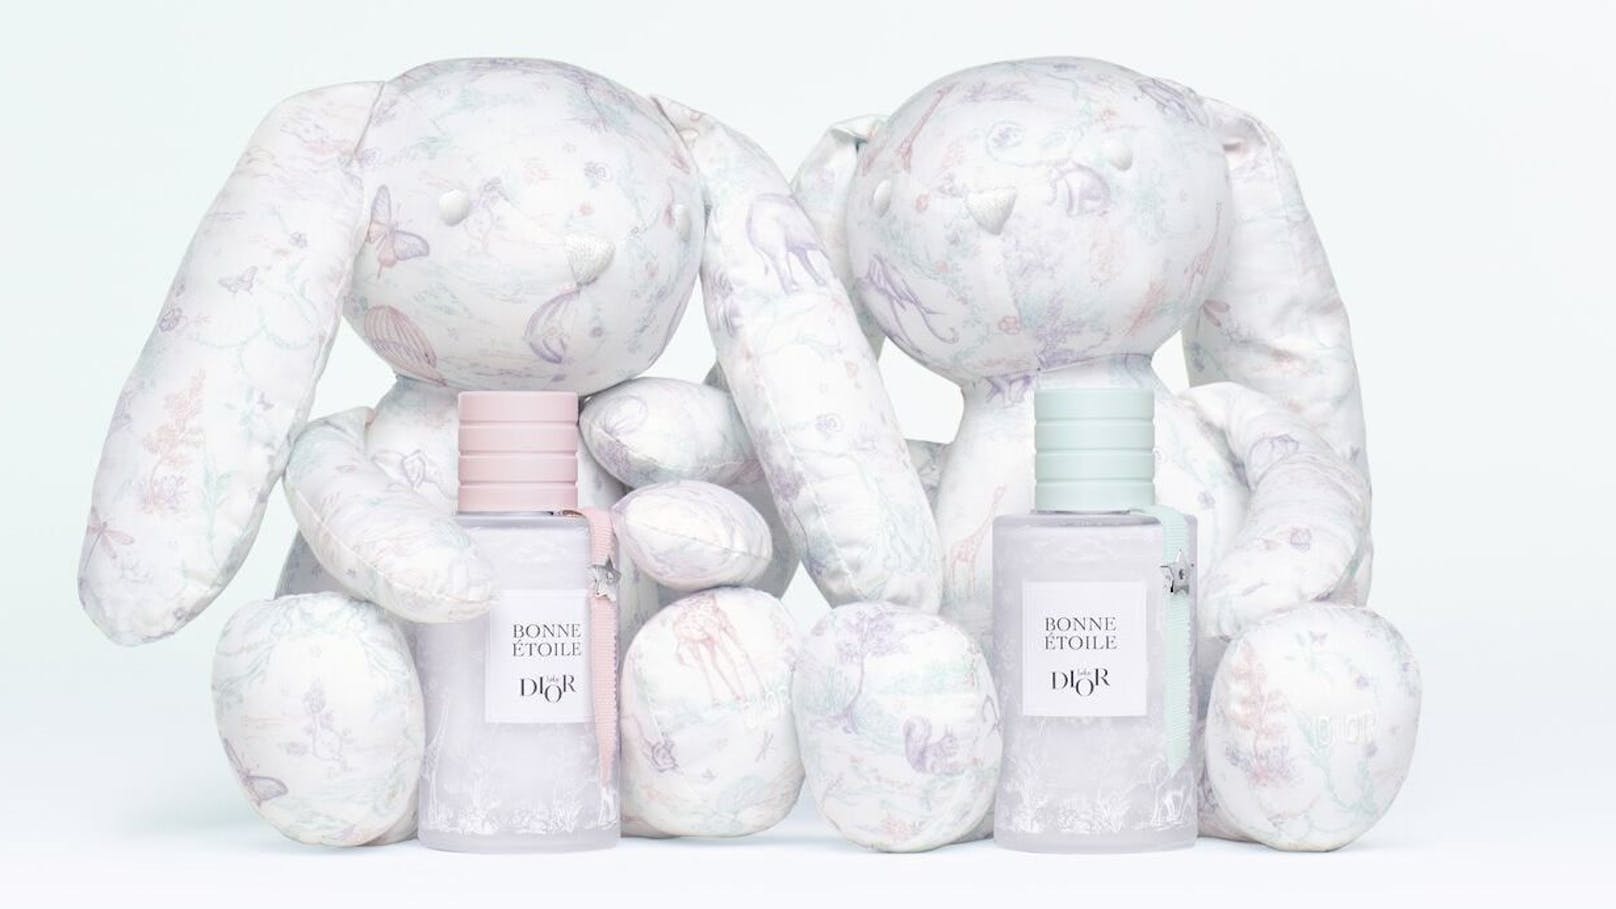 Die Edelmarke Dior hat Parfüms für Babys herausgegeben.